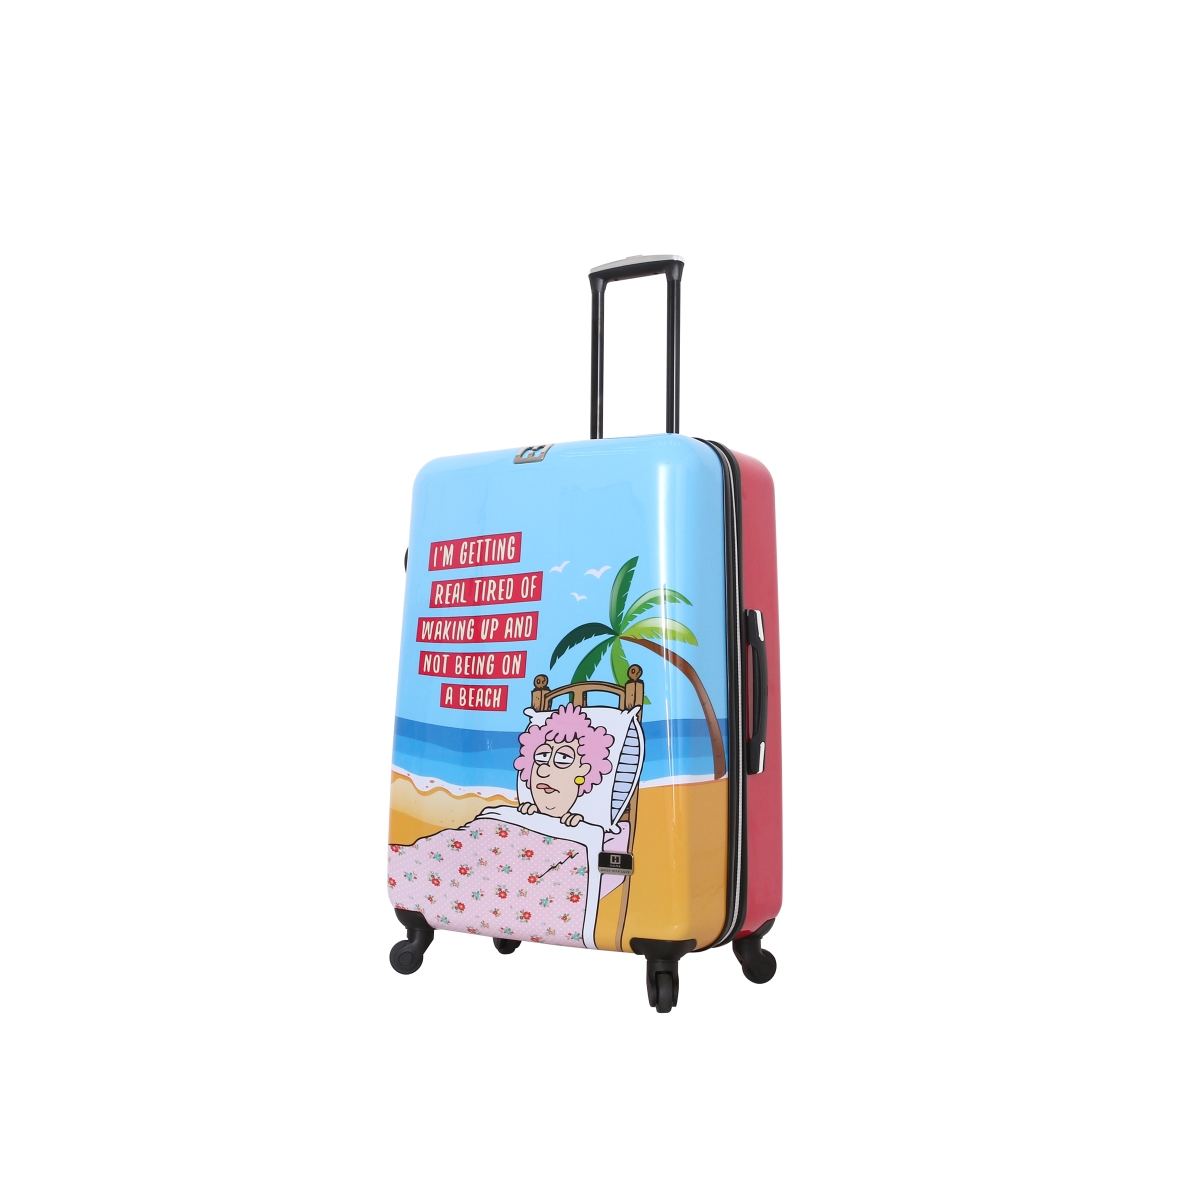 H1012-28-atrnn 28 In. Aunty Acid Trip Cartoon Graphic Luggage, Multicolor